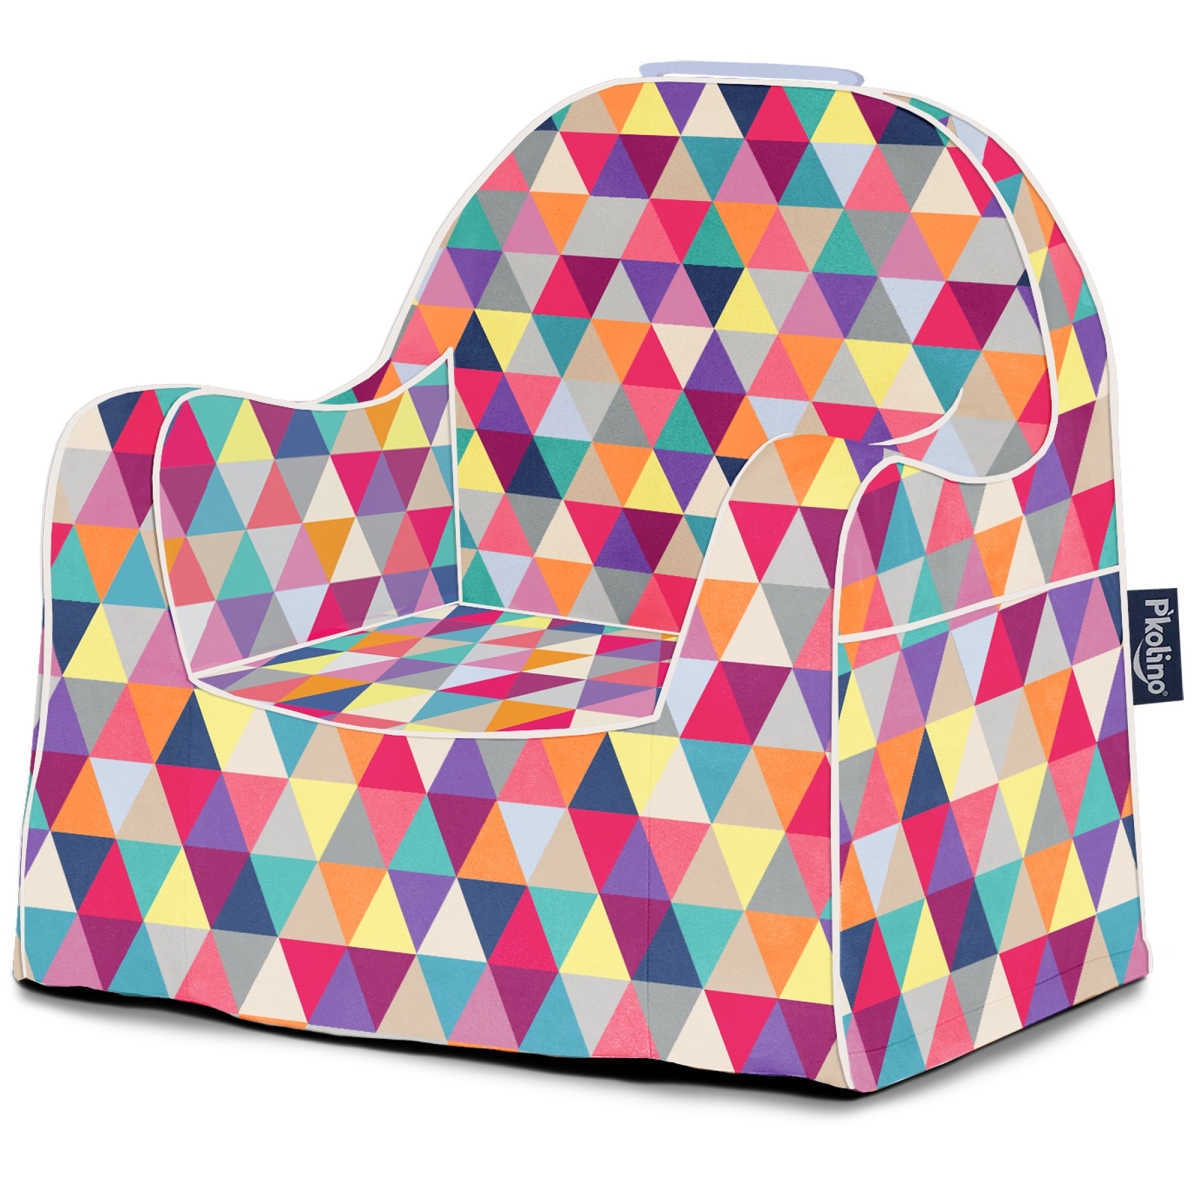 Pkfflrpsm Little Reader Toddler Chair - Prism